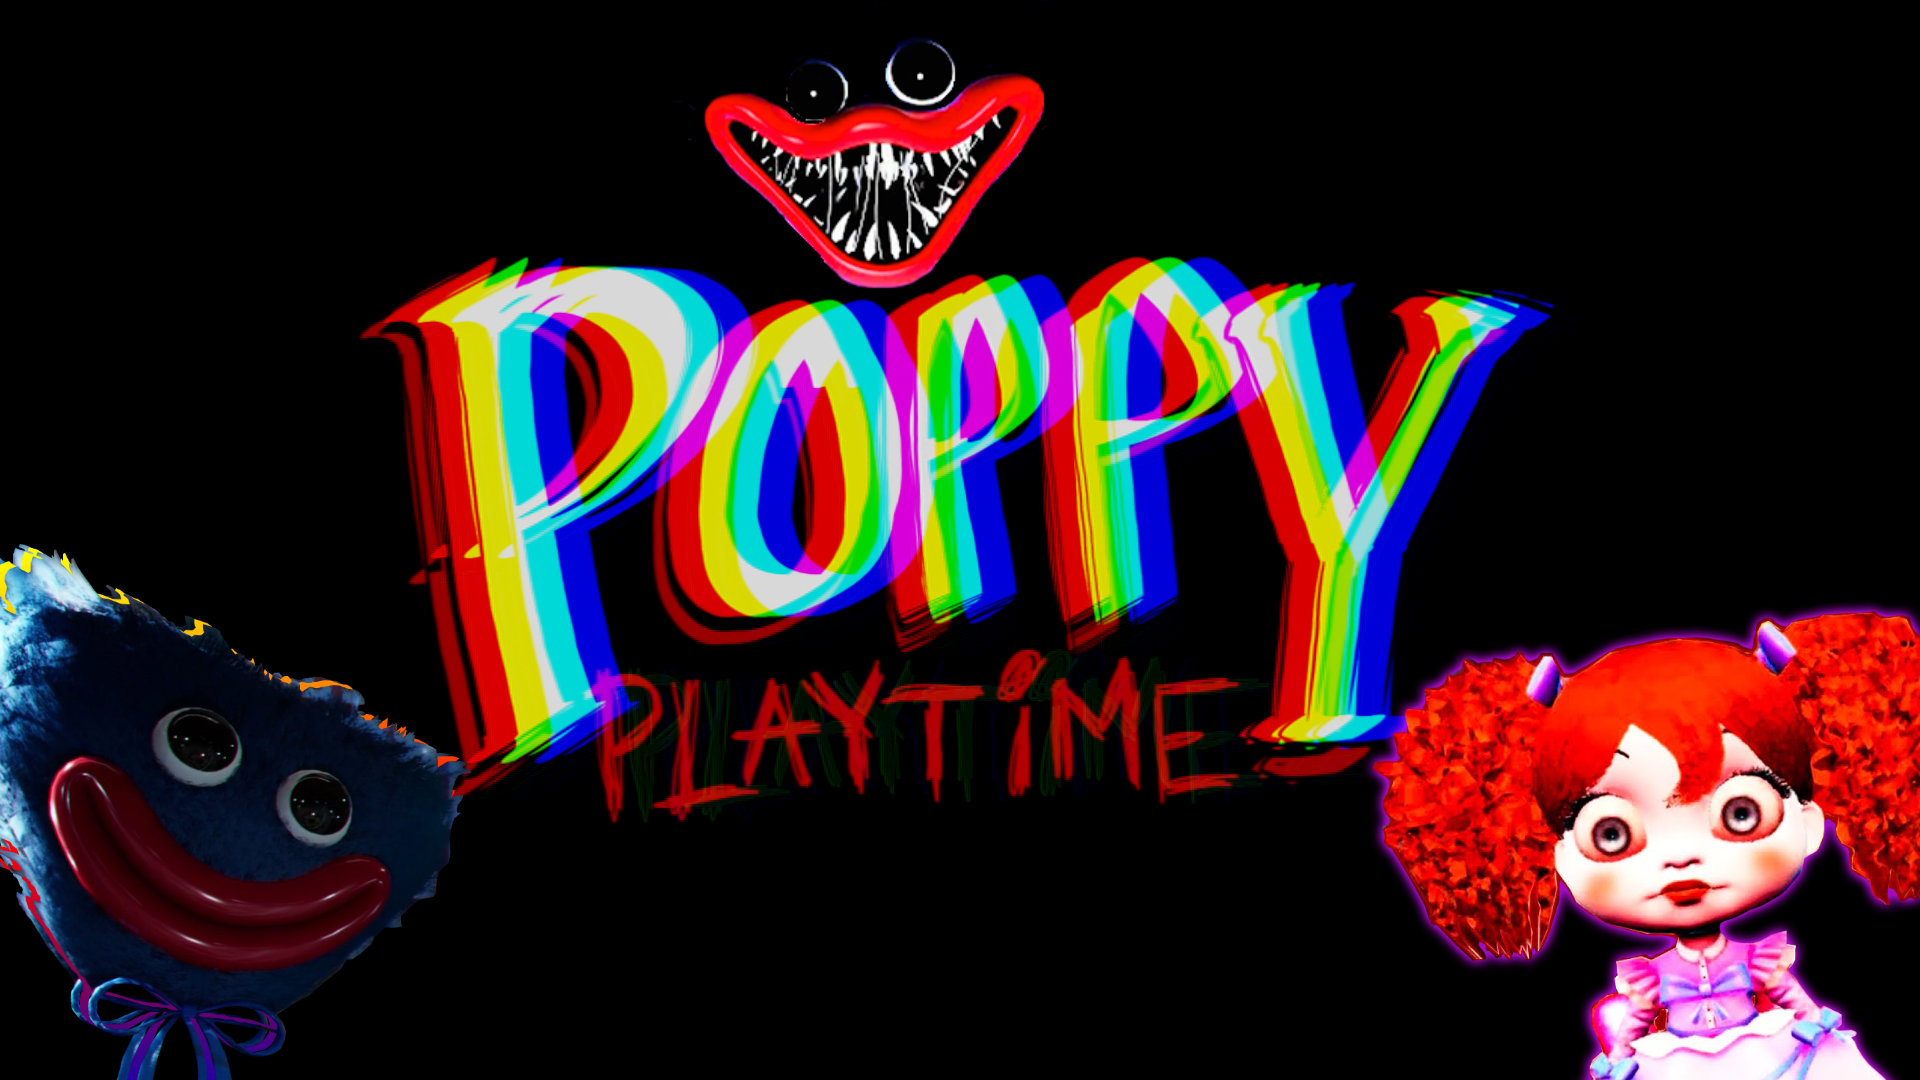 Попей плей тайм хаги ваги. Поппи Плэйтайм. Поппи плей тайм Поппи. Poppy Playtime надпись. Логотип Поппи плей тайм.